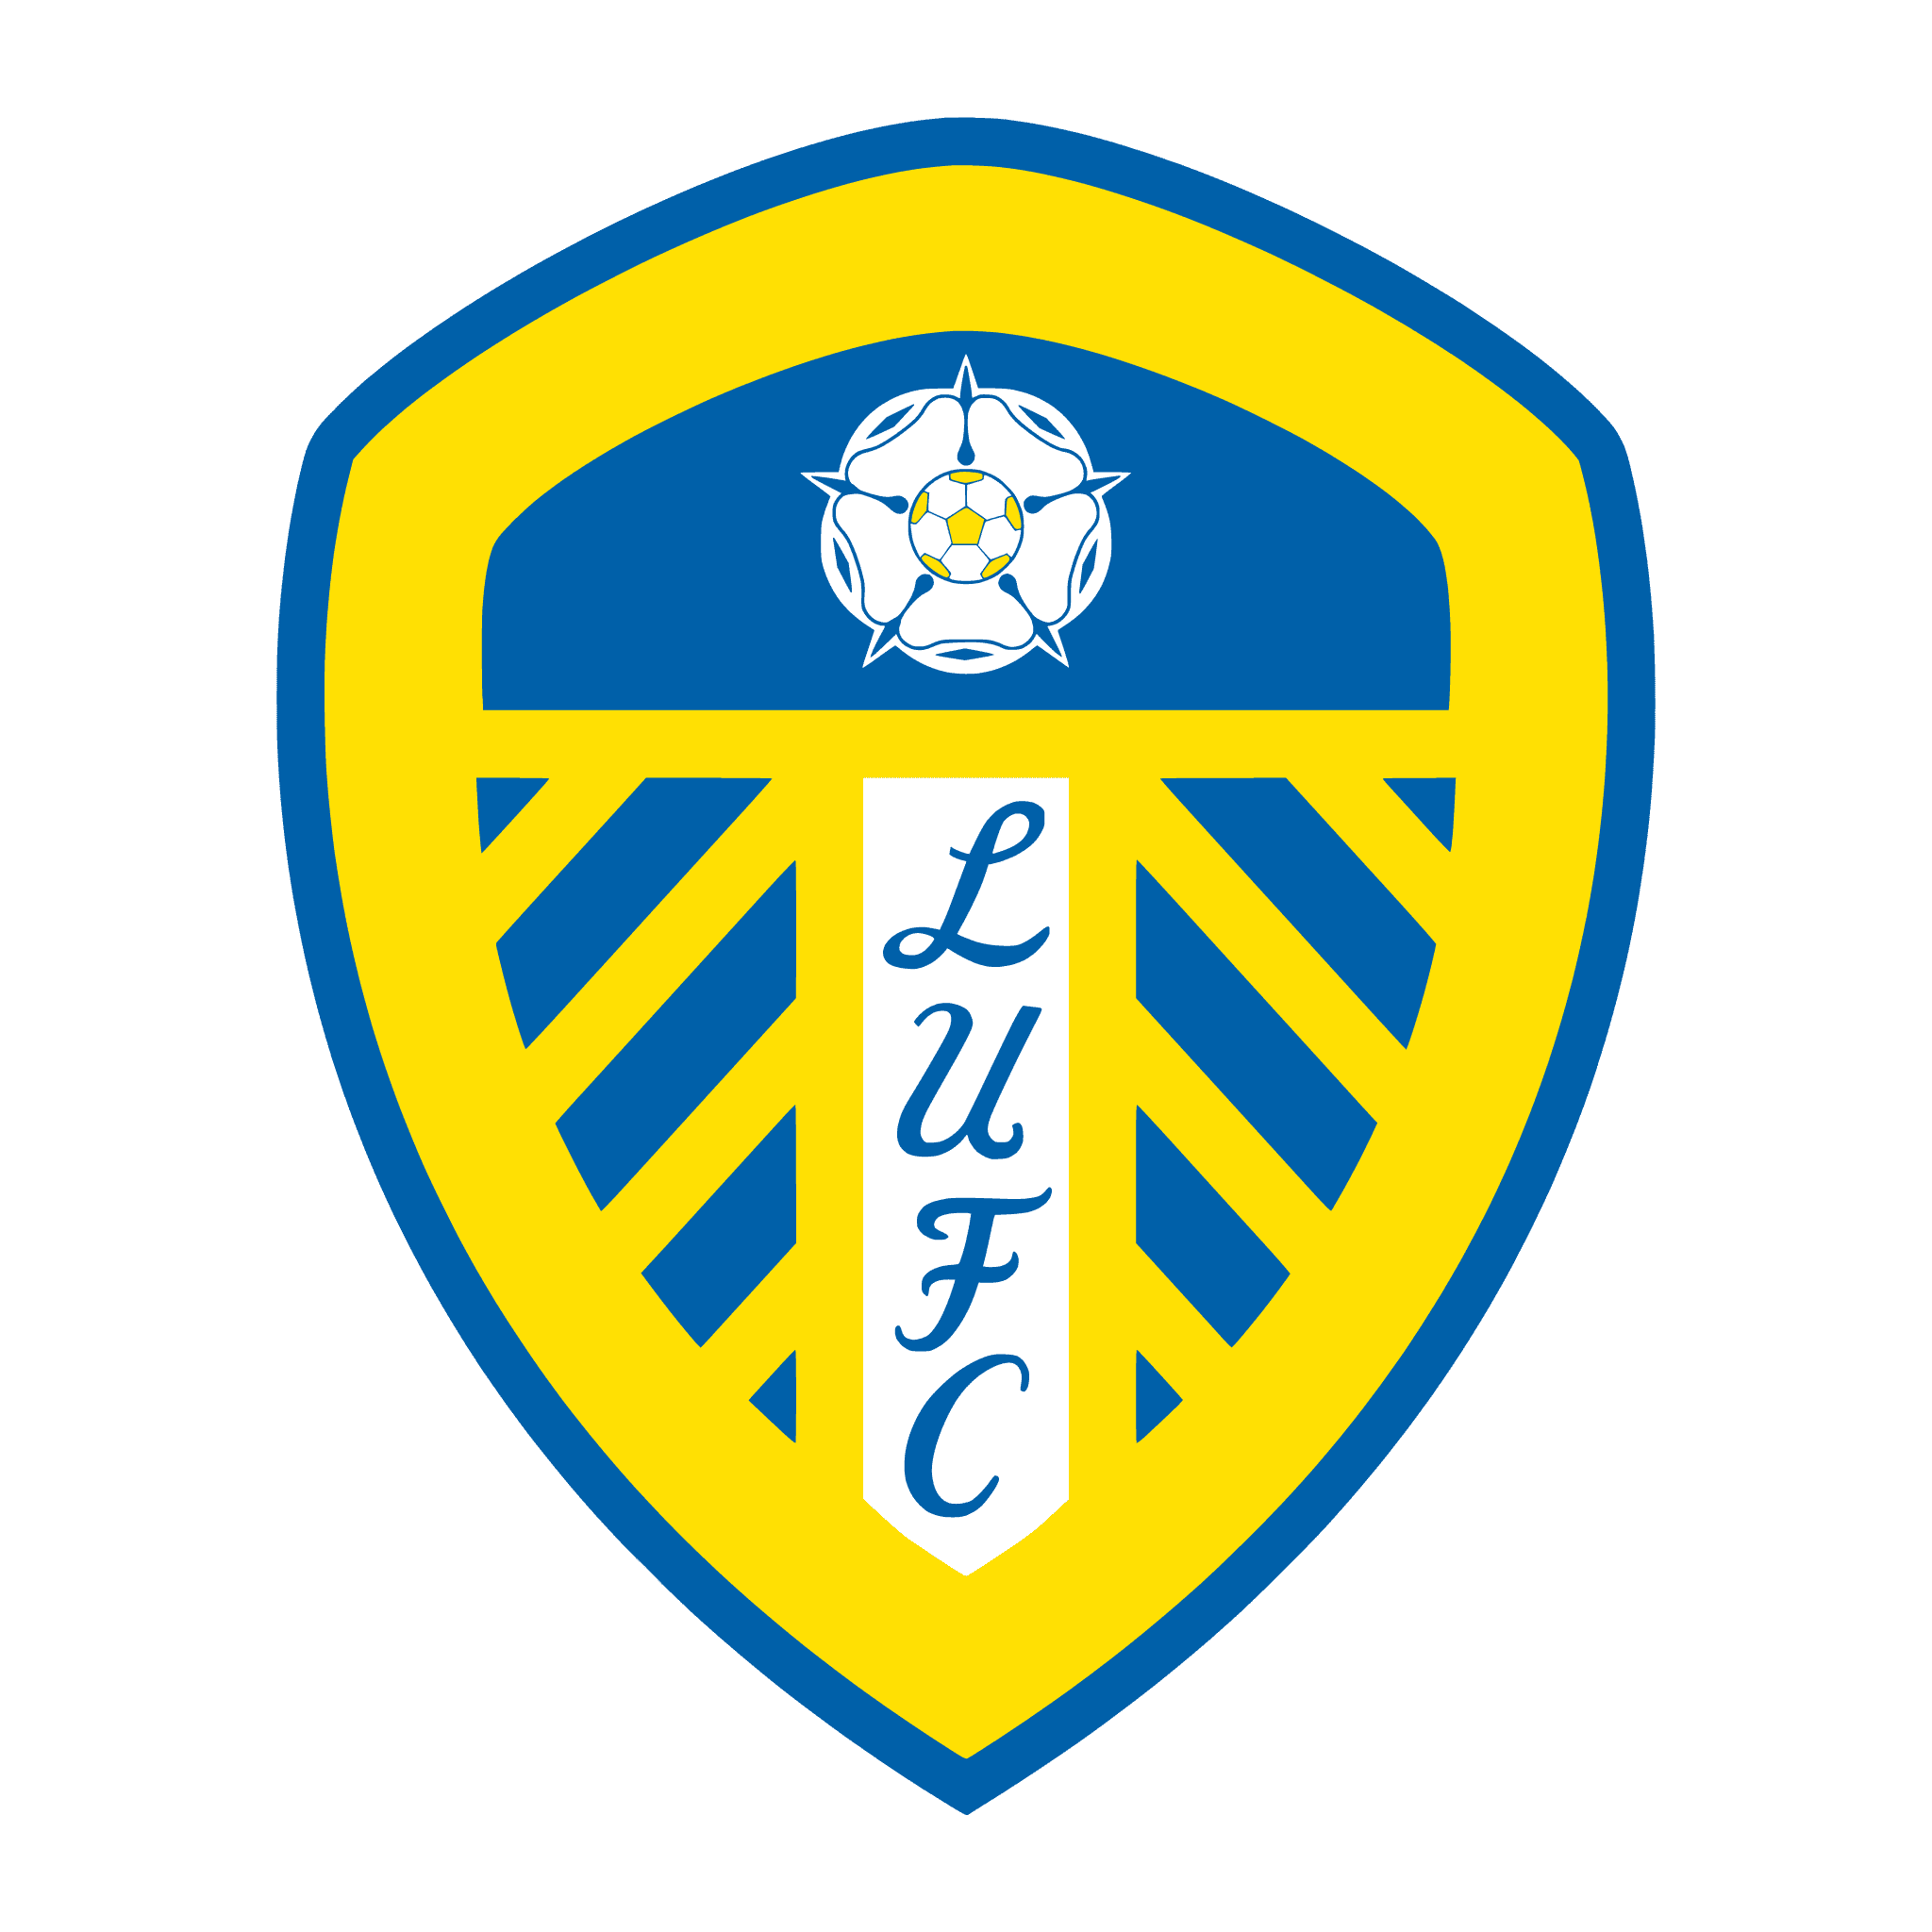 CLB Leeds United